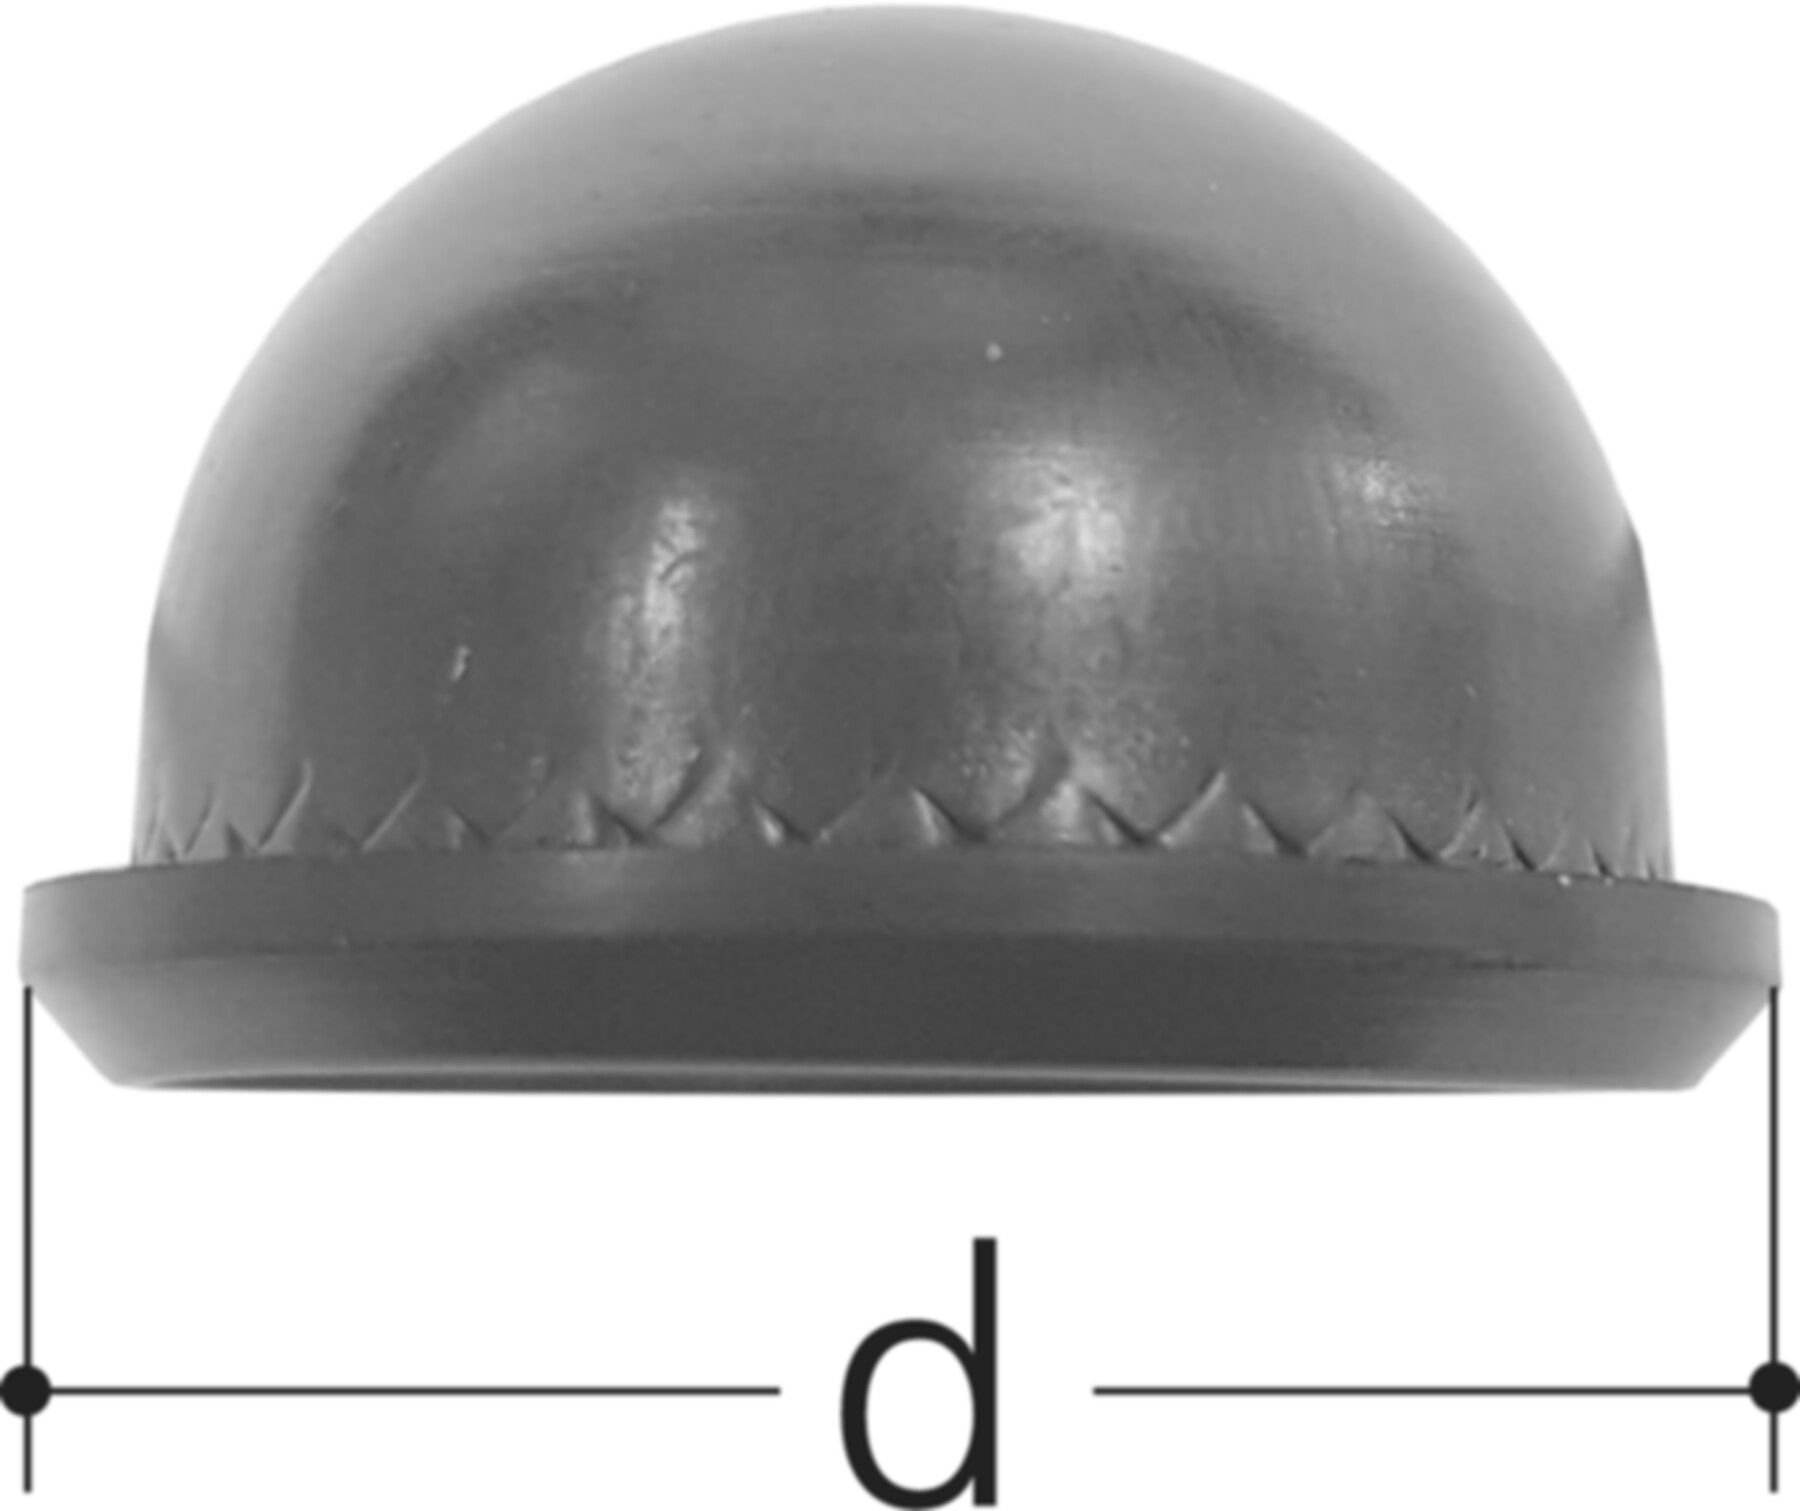 Dämpfermembrane 1" 350719913 zu Druckreduzierventil 1300-1335 - JRG Armaturen